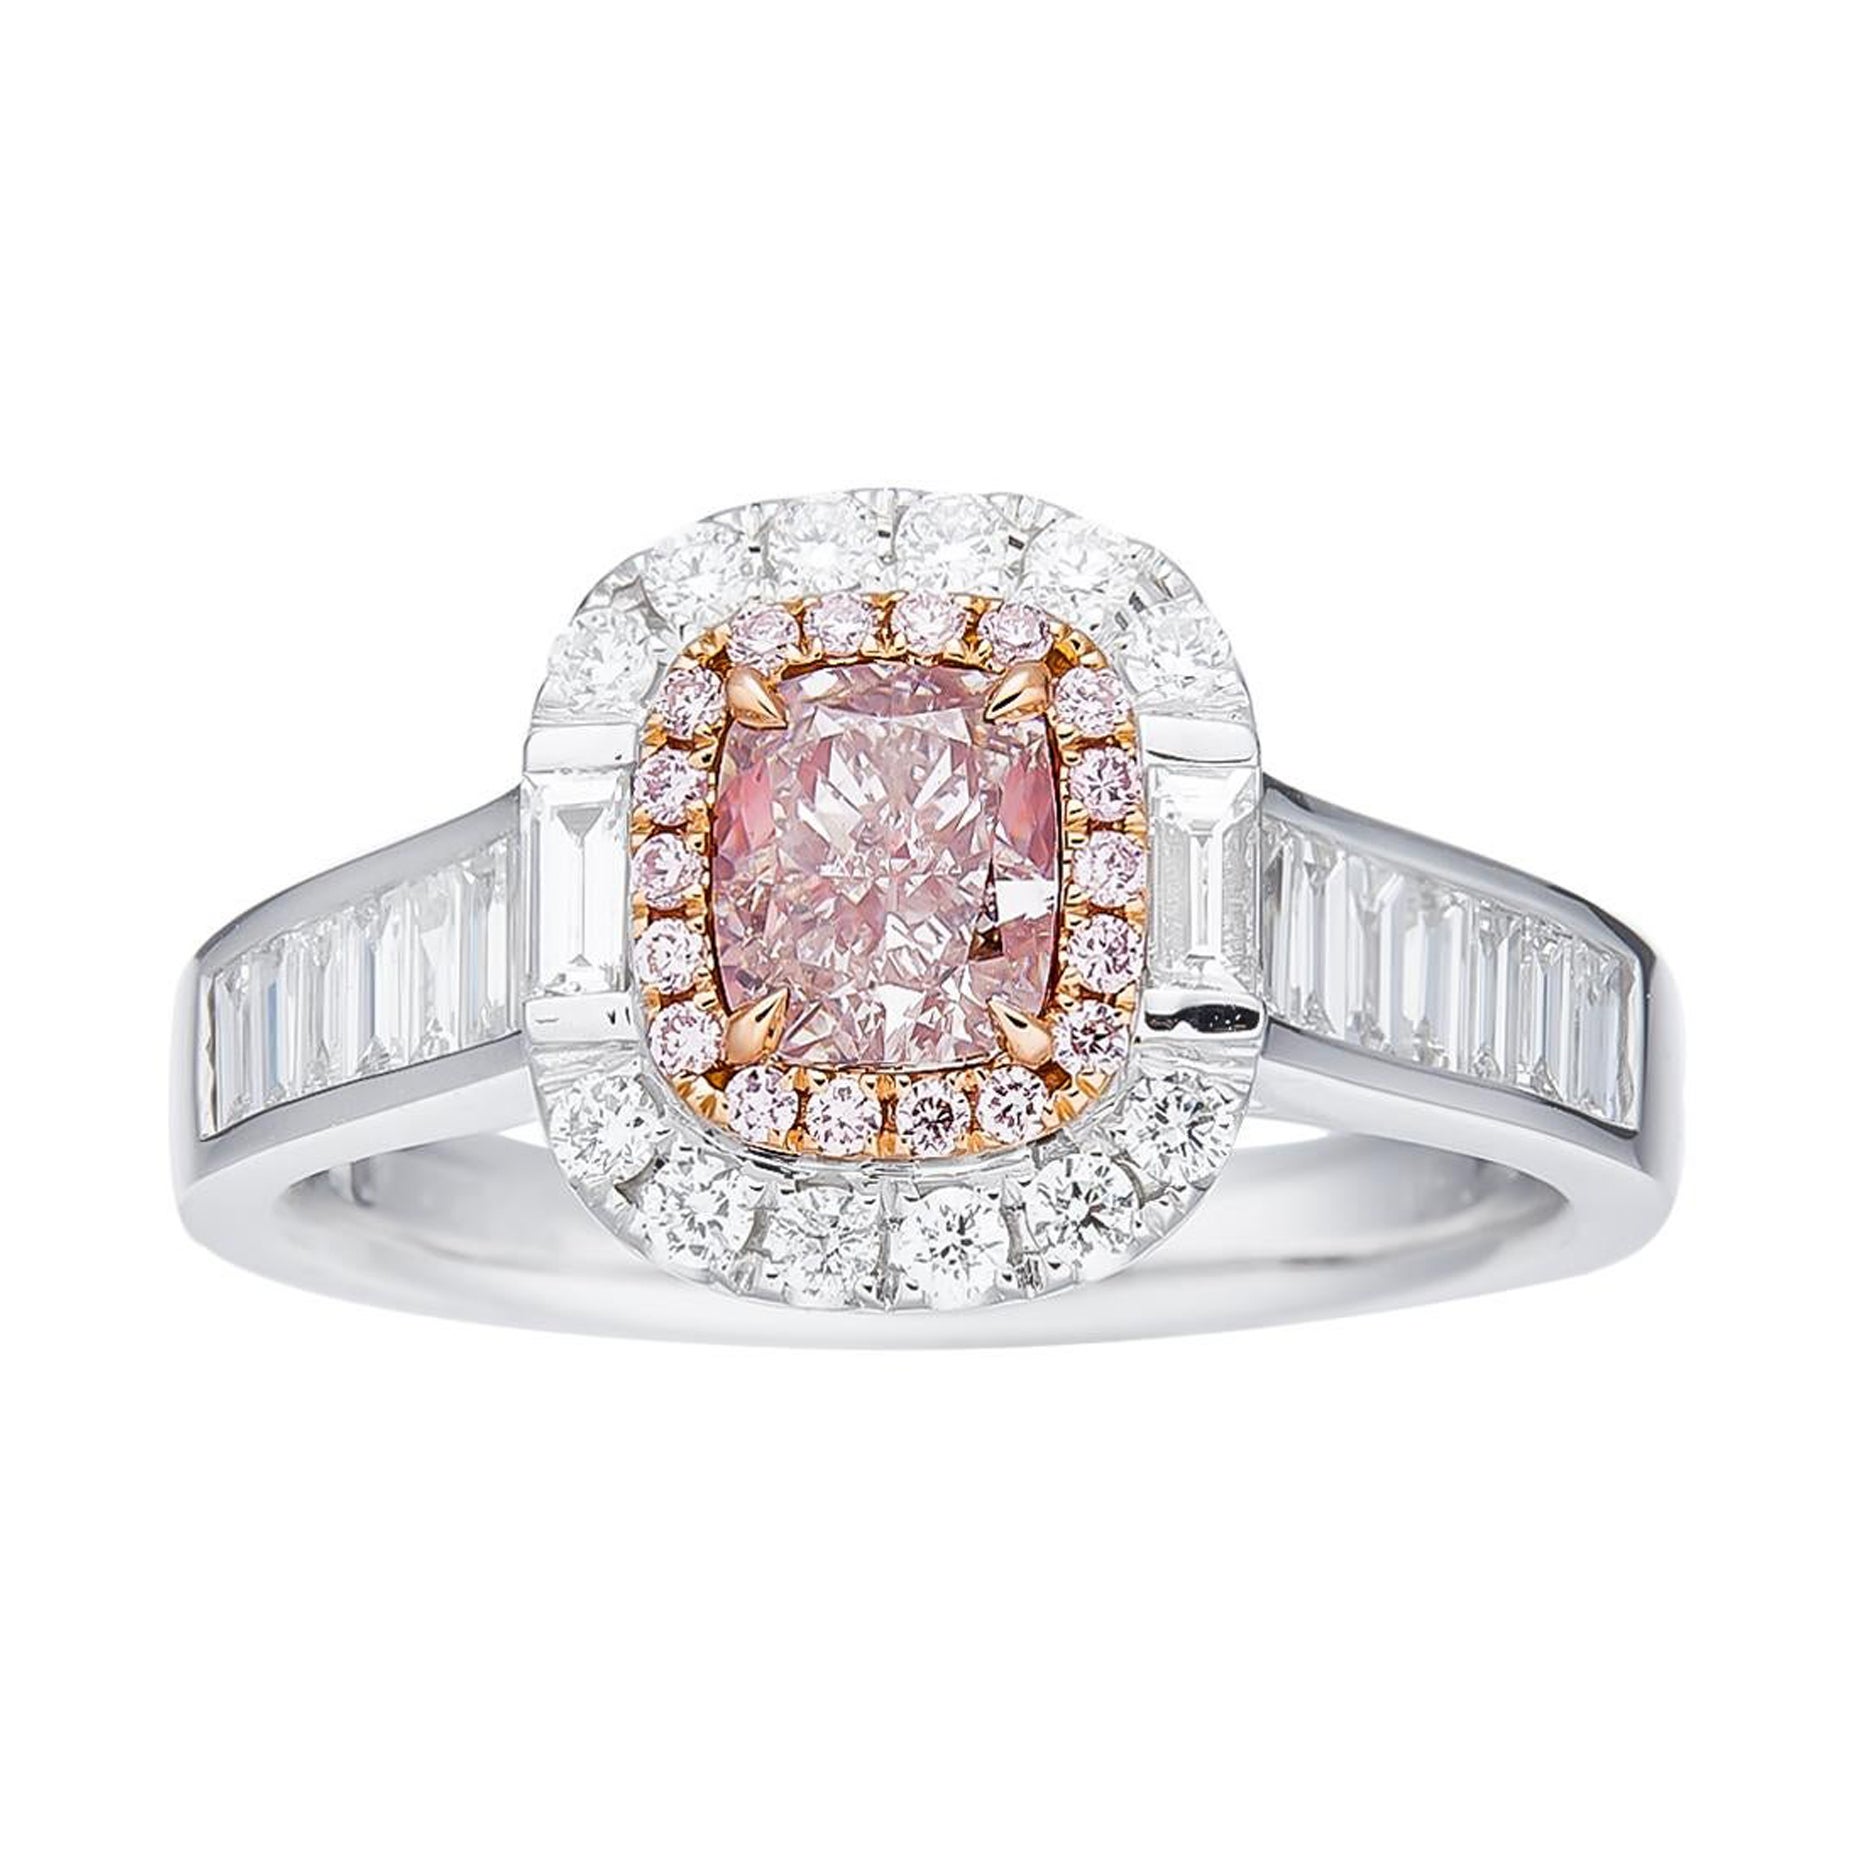 Bague en diamant naturel de taille coussin de 0,65ct, certifié par le GIA, de couleur rose Light Brown.